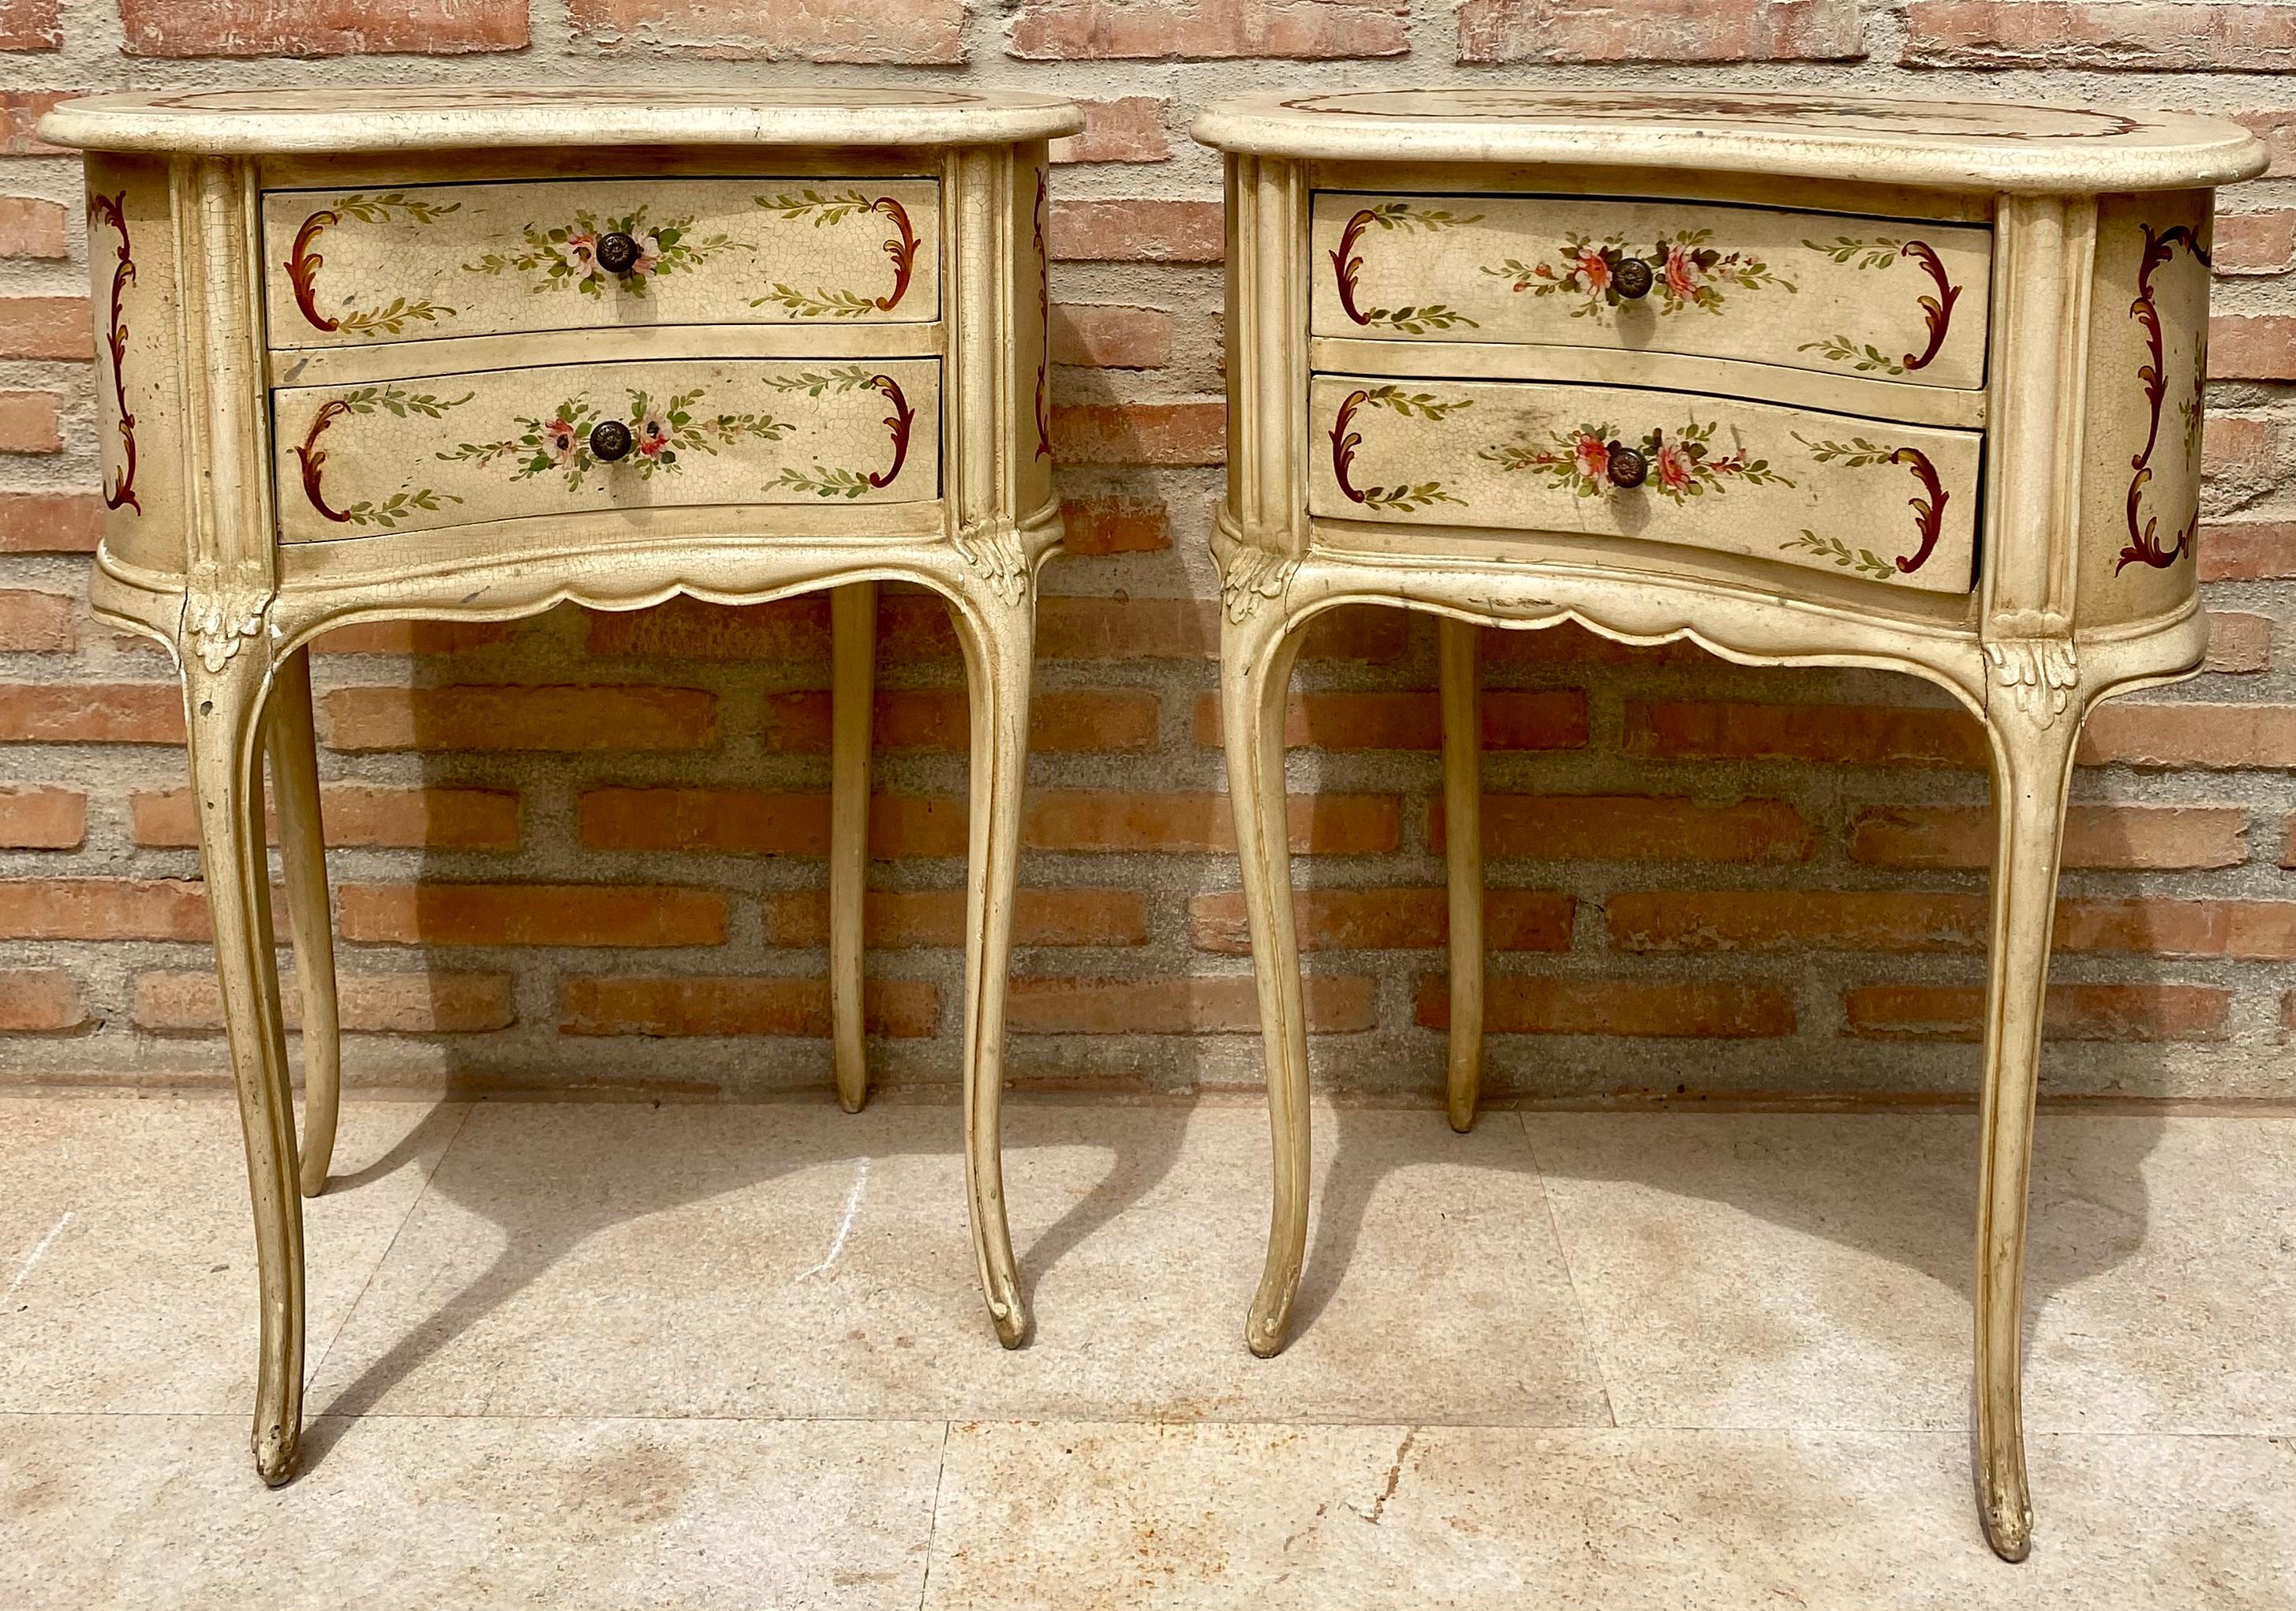 Zwei elegante Nachttische oder Beistelltische aus Massivholz im Louis XV-Stil, lackiert in hellem Beige mit floralen Akzenten. Hergestellt aus geschnitztem Holz, um 1940.
Eine hervorragende 1940er Französisch hölzernen zwei Schubladen Niere Stil